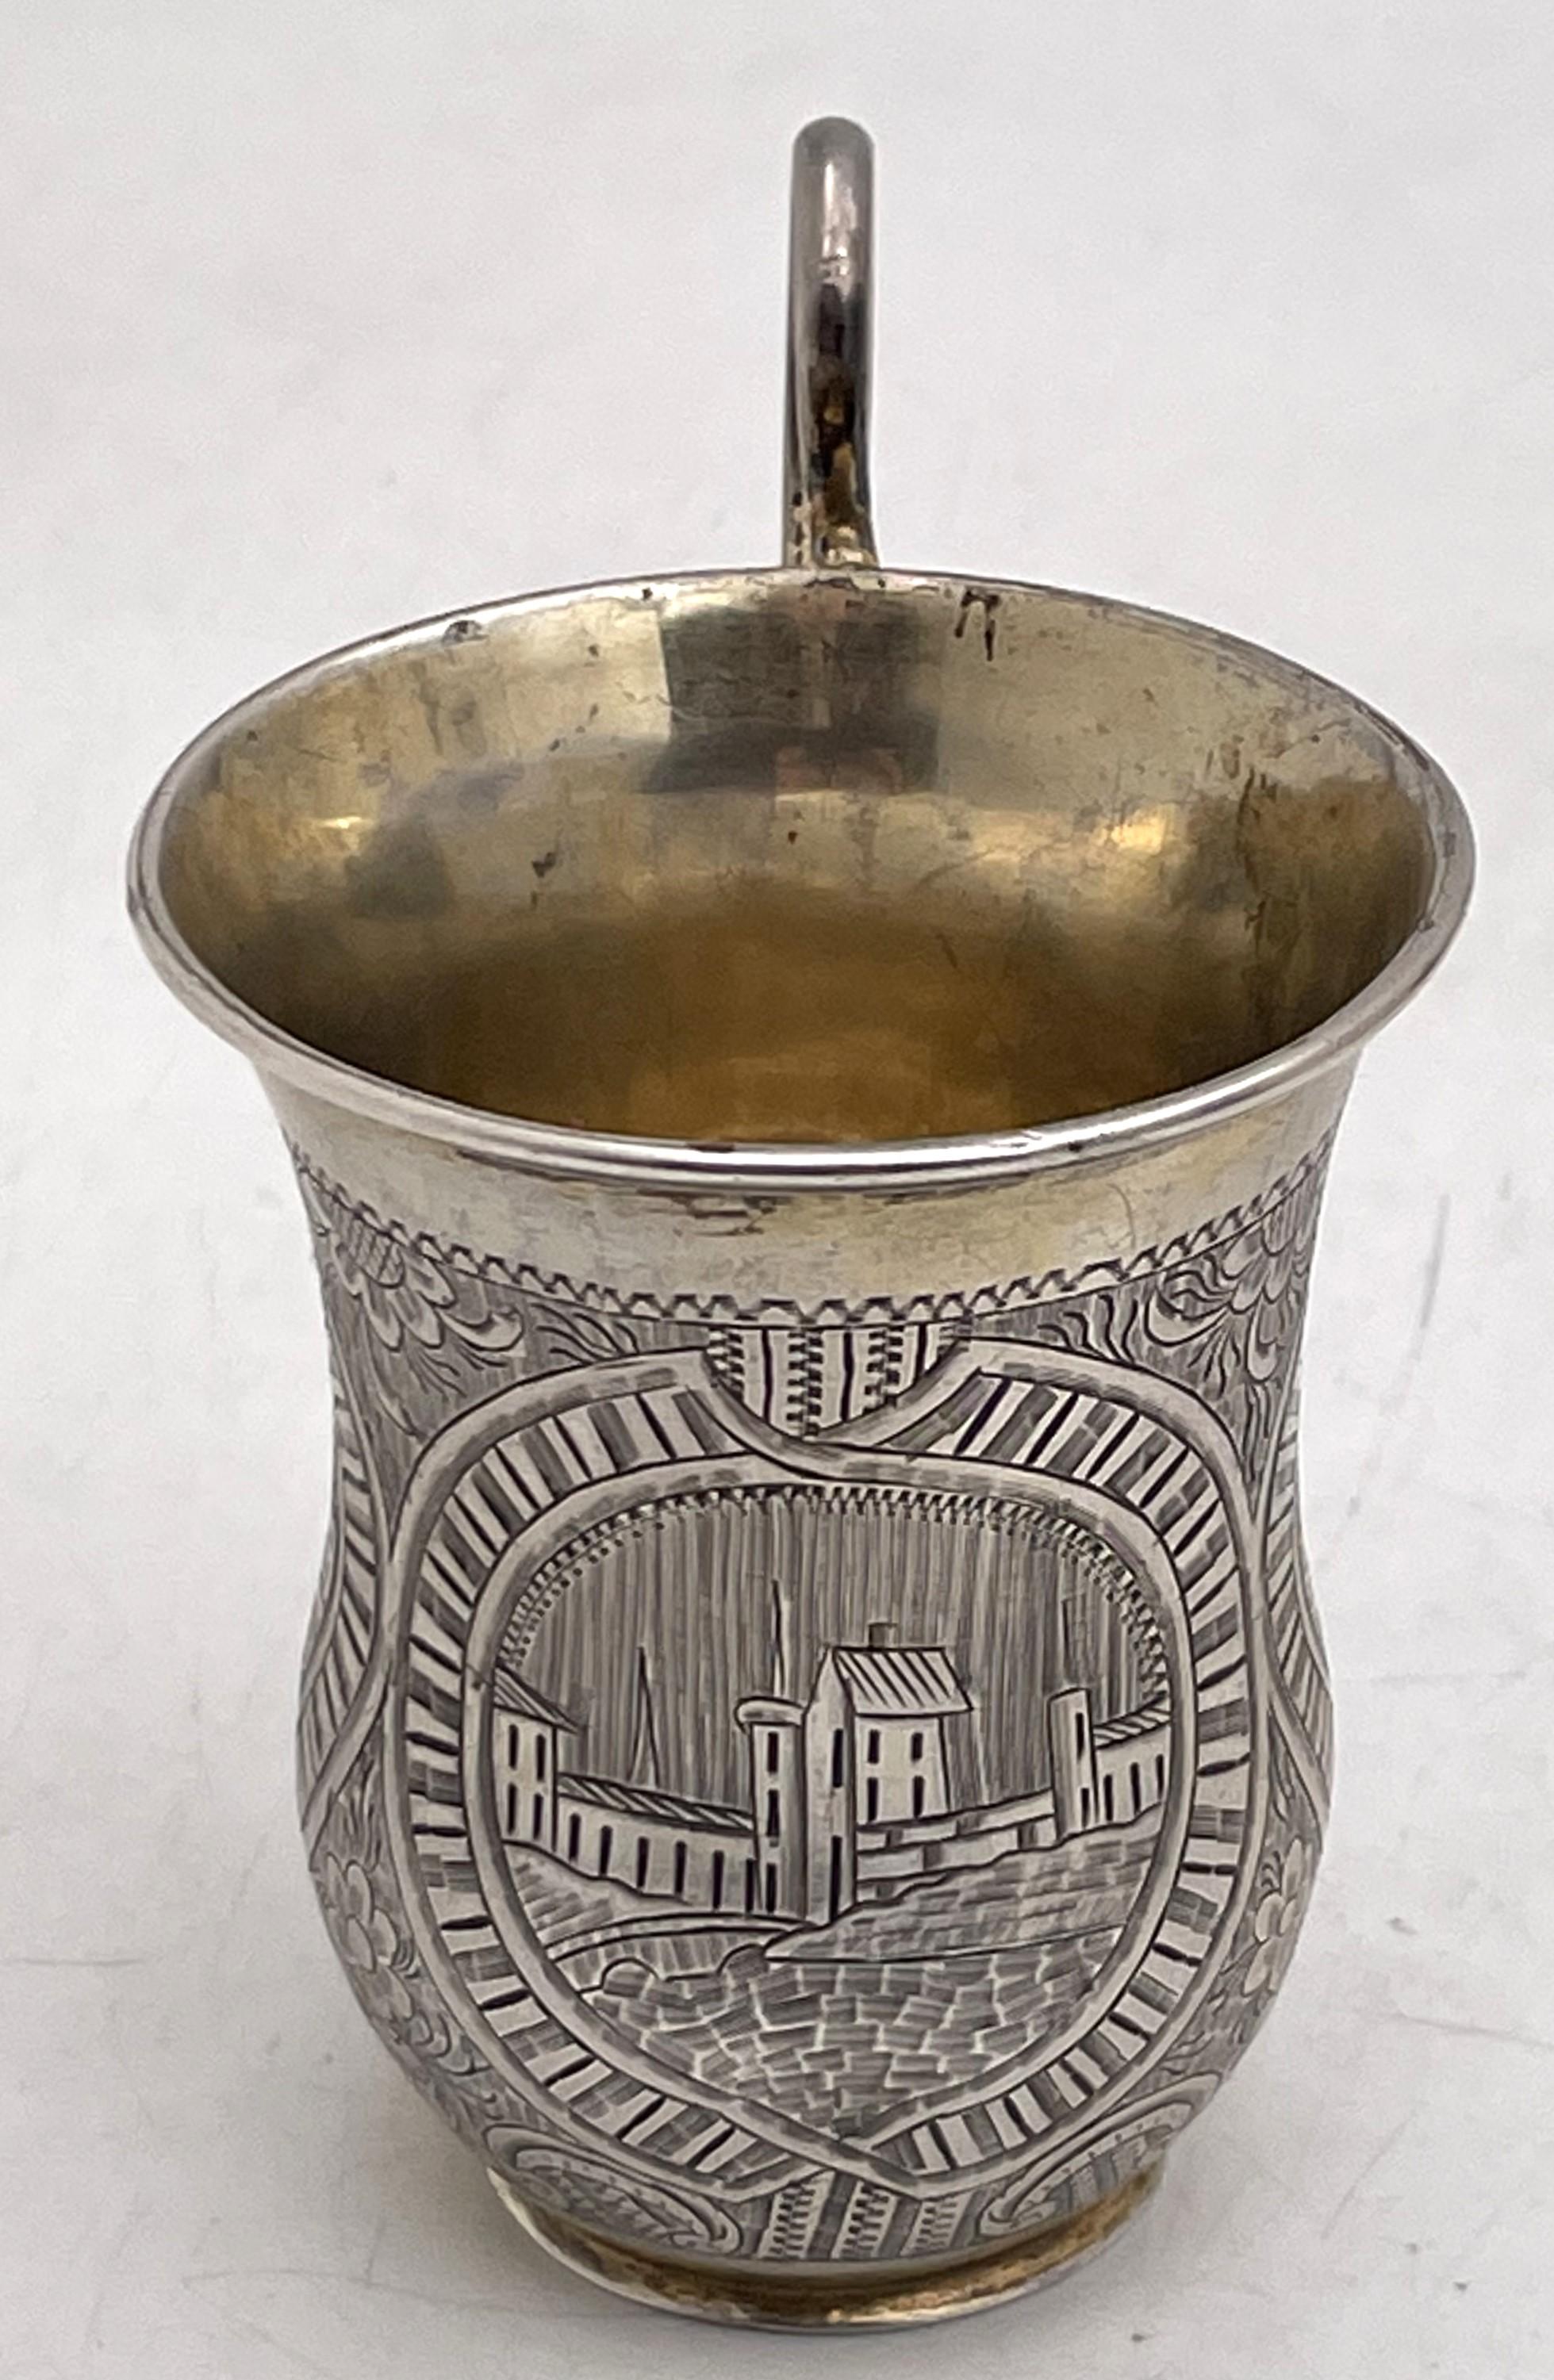 Russischer Wodka-Becher aus 0,84er Silber, teilweise vergoldet, hergestellt 1851 in Sankt Petersburg, mit stilisierten floralen und architektonischen Motiven. Er misst 3 1/8'' in der Höhe und 2 1/8'' im Durchmesser an der Spitze und trägt